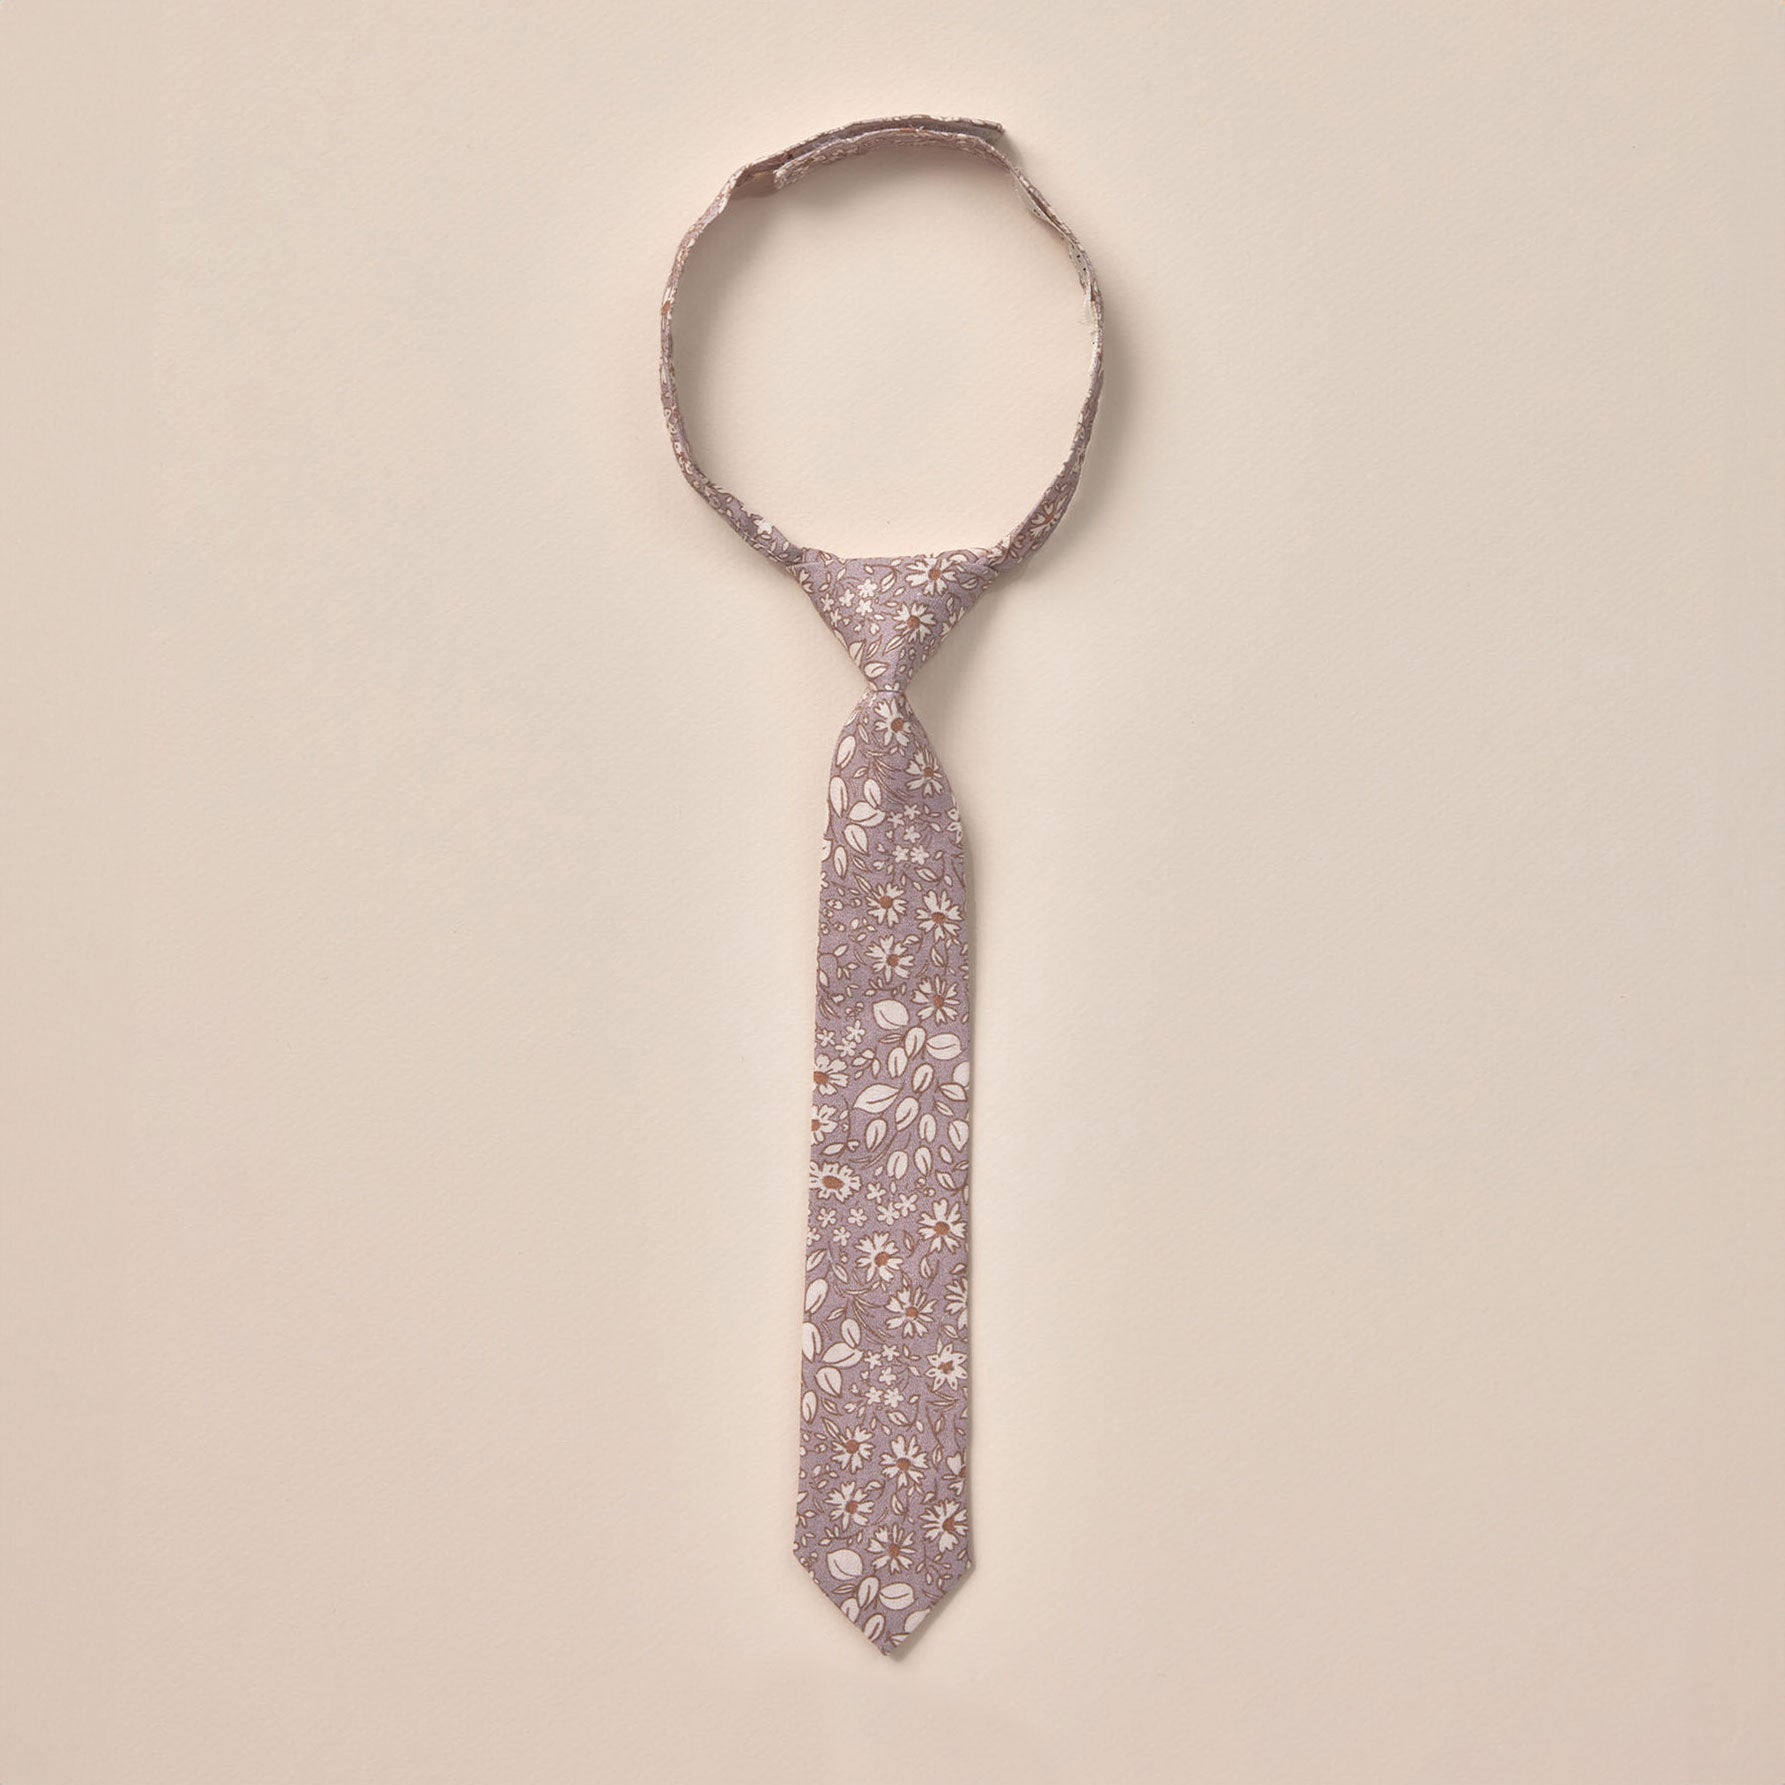 Noralee Skinny Tie - Lavender Bloom